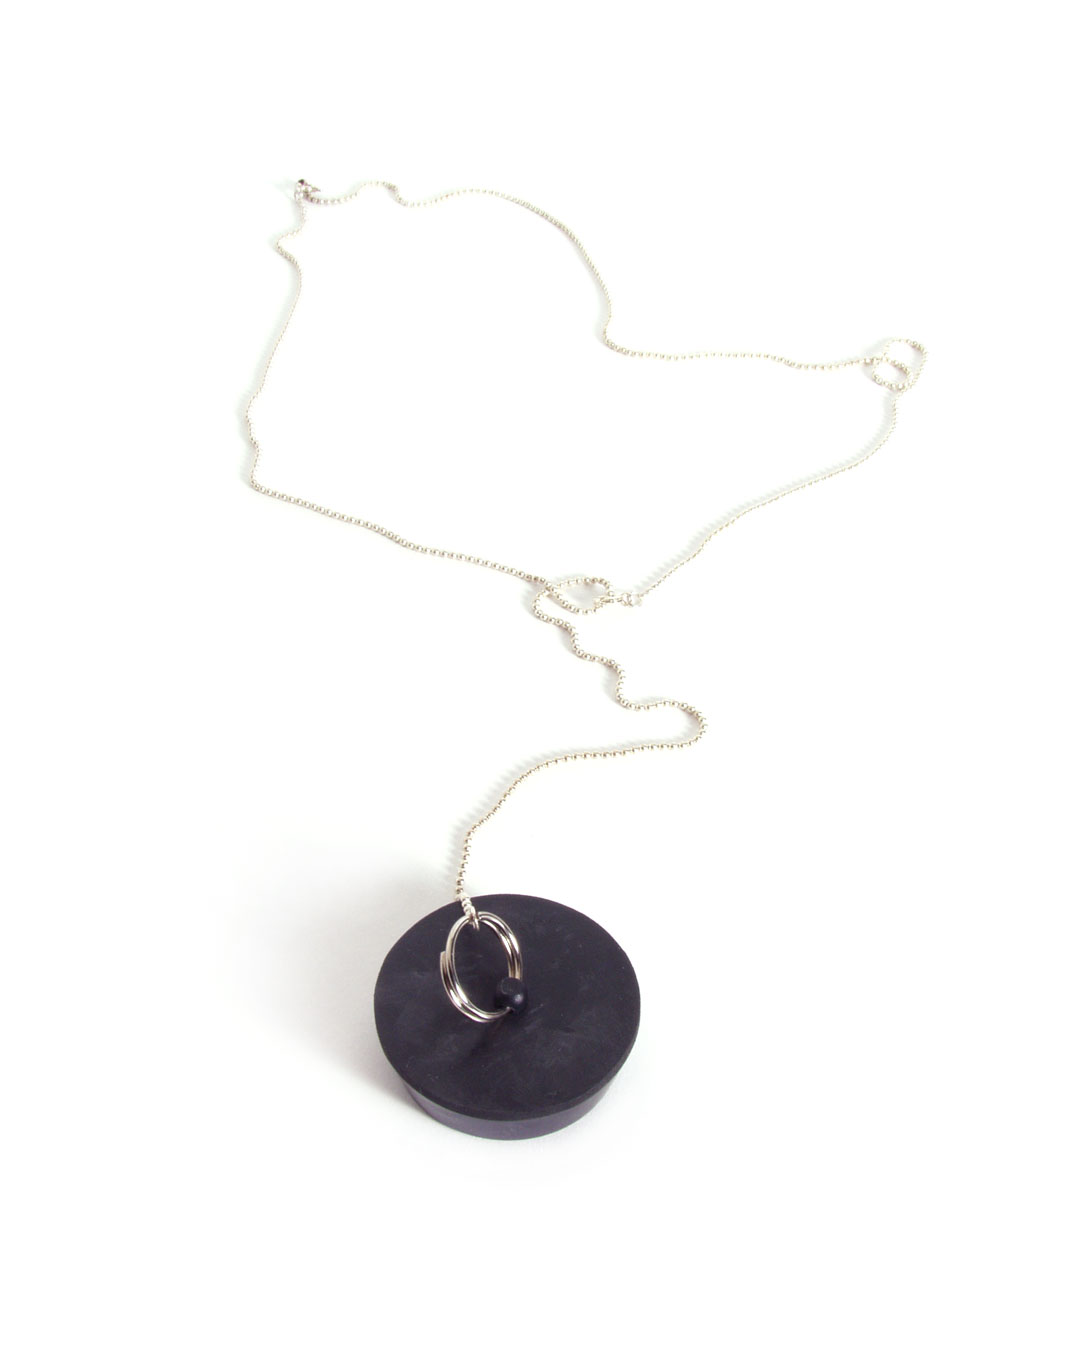 Hilde De Decker, untitled, 1996, pendant; silver, rubber, element ø 40 x 13 mm; L 630 mm